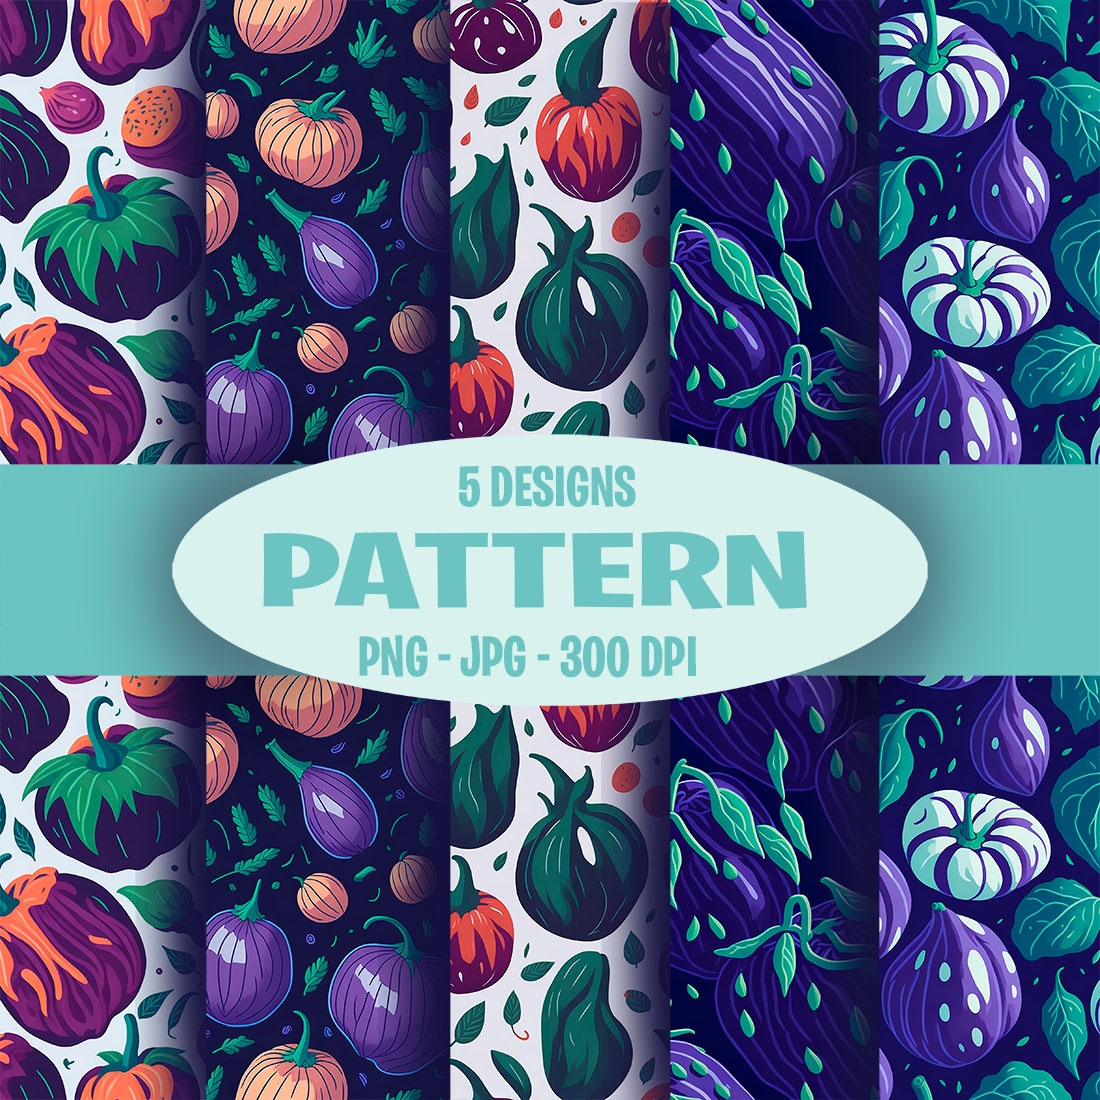 Vegetable and leaf patterns set cover image.